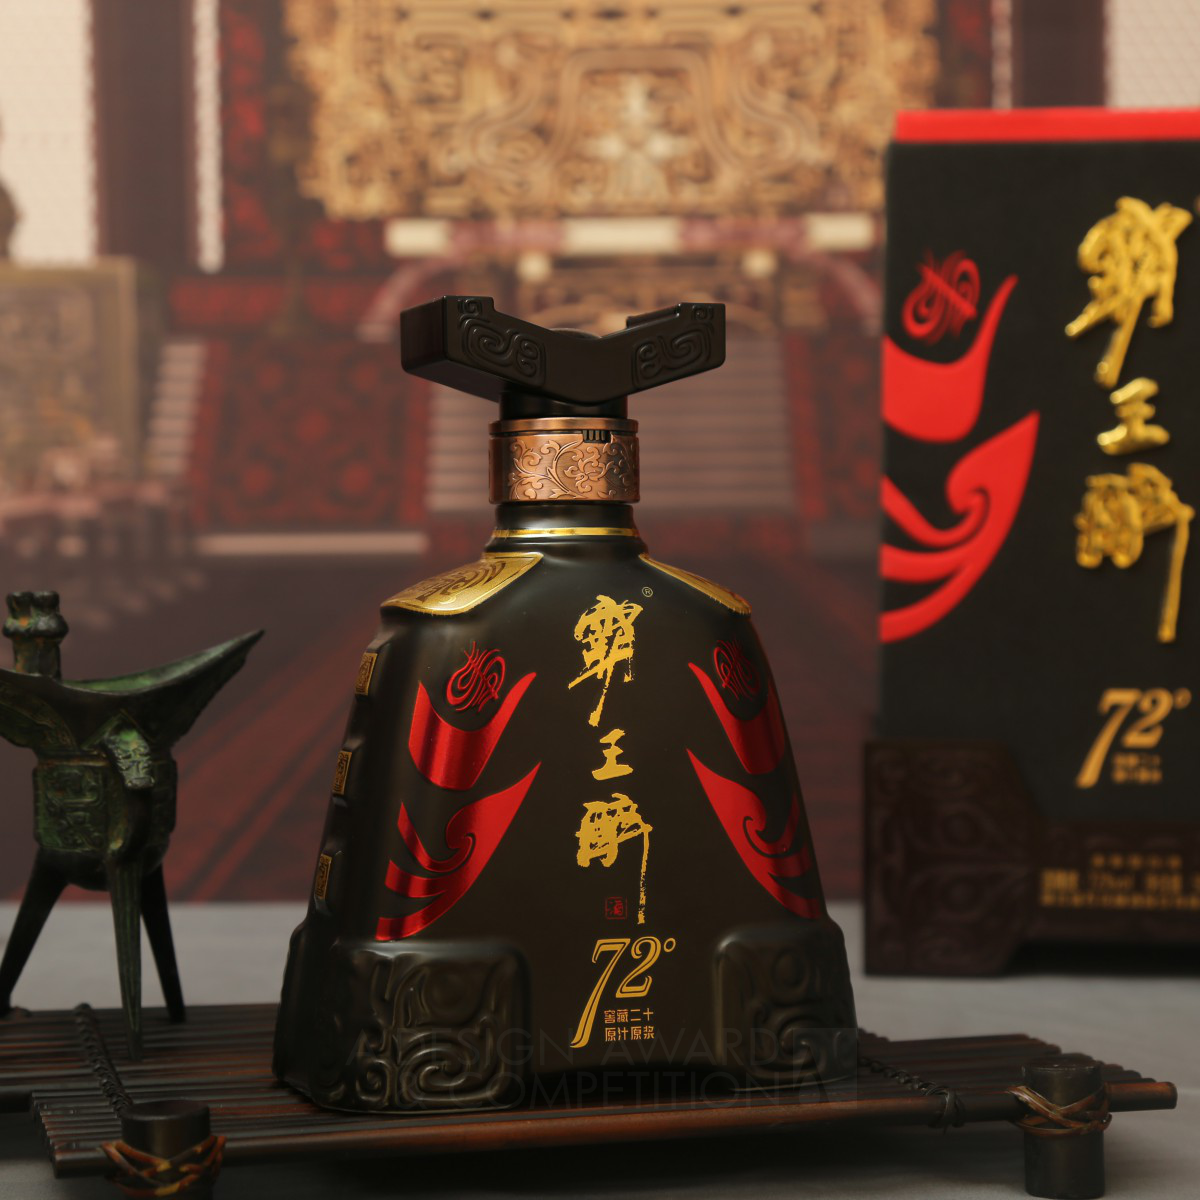 72 Xiangyu The Conqueror Liquor Chinese Baijiu by Lubo Cao, Xiaoqiang Hu and Pengfei Dai Bronze Packaging Design Award Winner 2024 